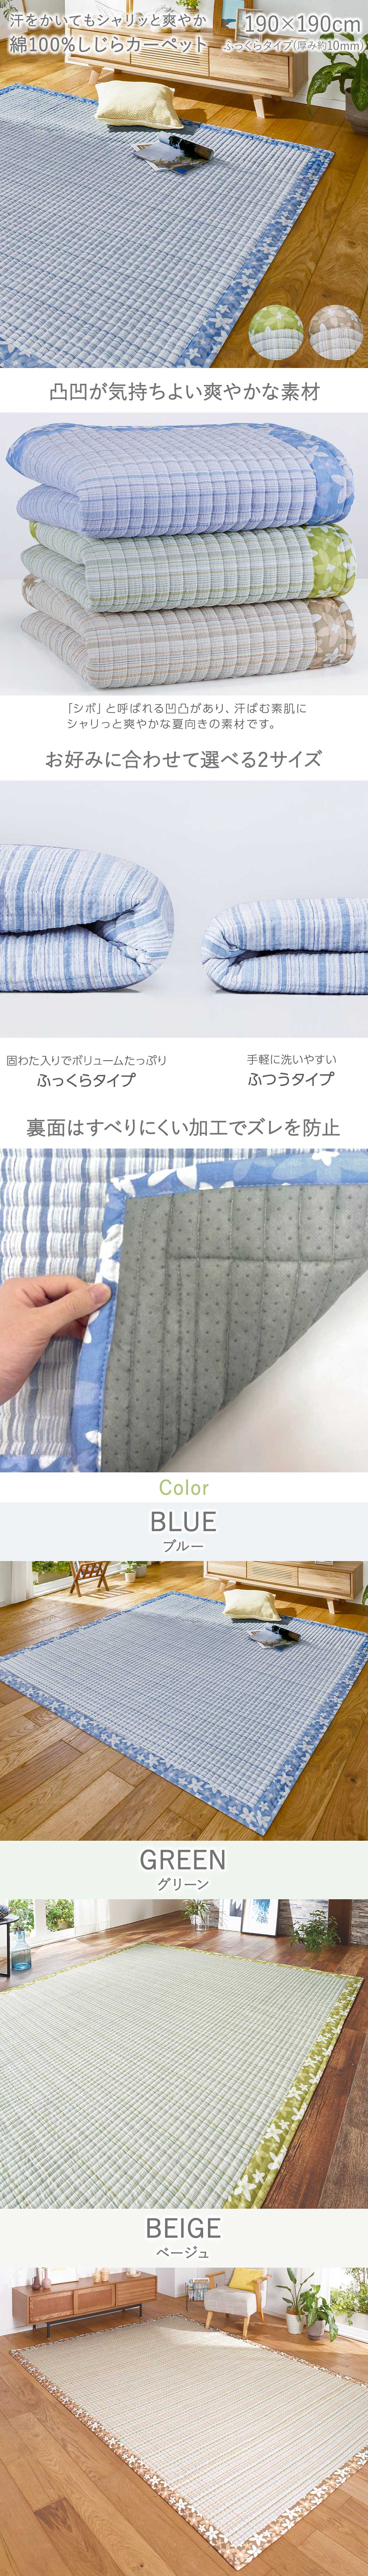 【楽天市場】190×190 綿素材 しじら織り しゃり さら キルトラグ ラグ ラグマット カーペット じゅうたん 絨毯 ふっくら 綿 綿